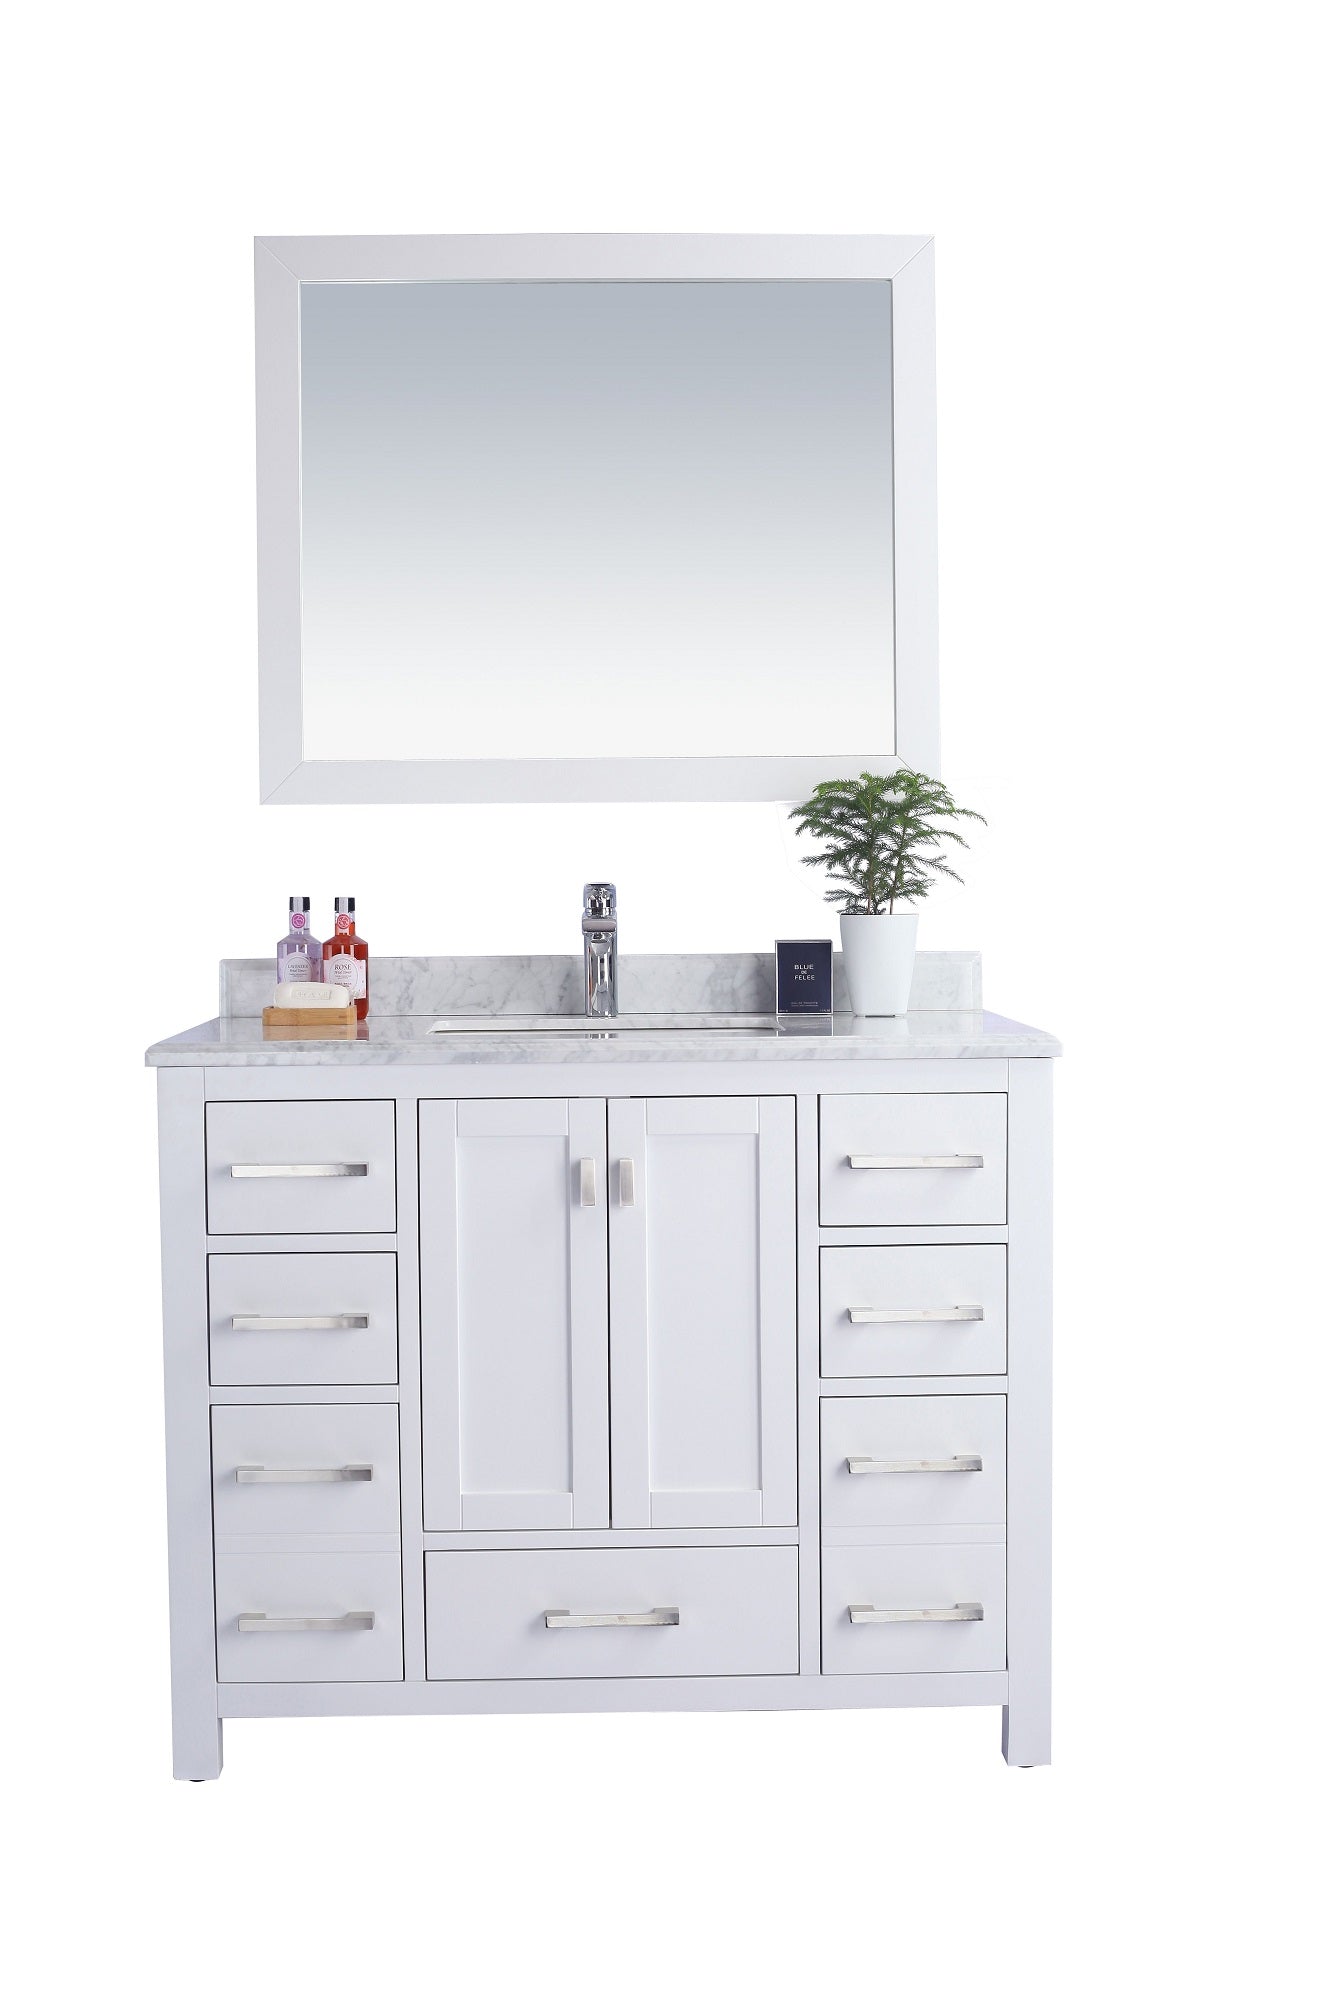 Wilson 42 - Cabinet with Countertop - Luxe Bathroom Vanities Luxury Bathroom Fixtures Bathroom Furniture